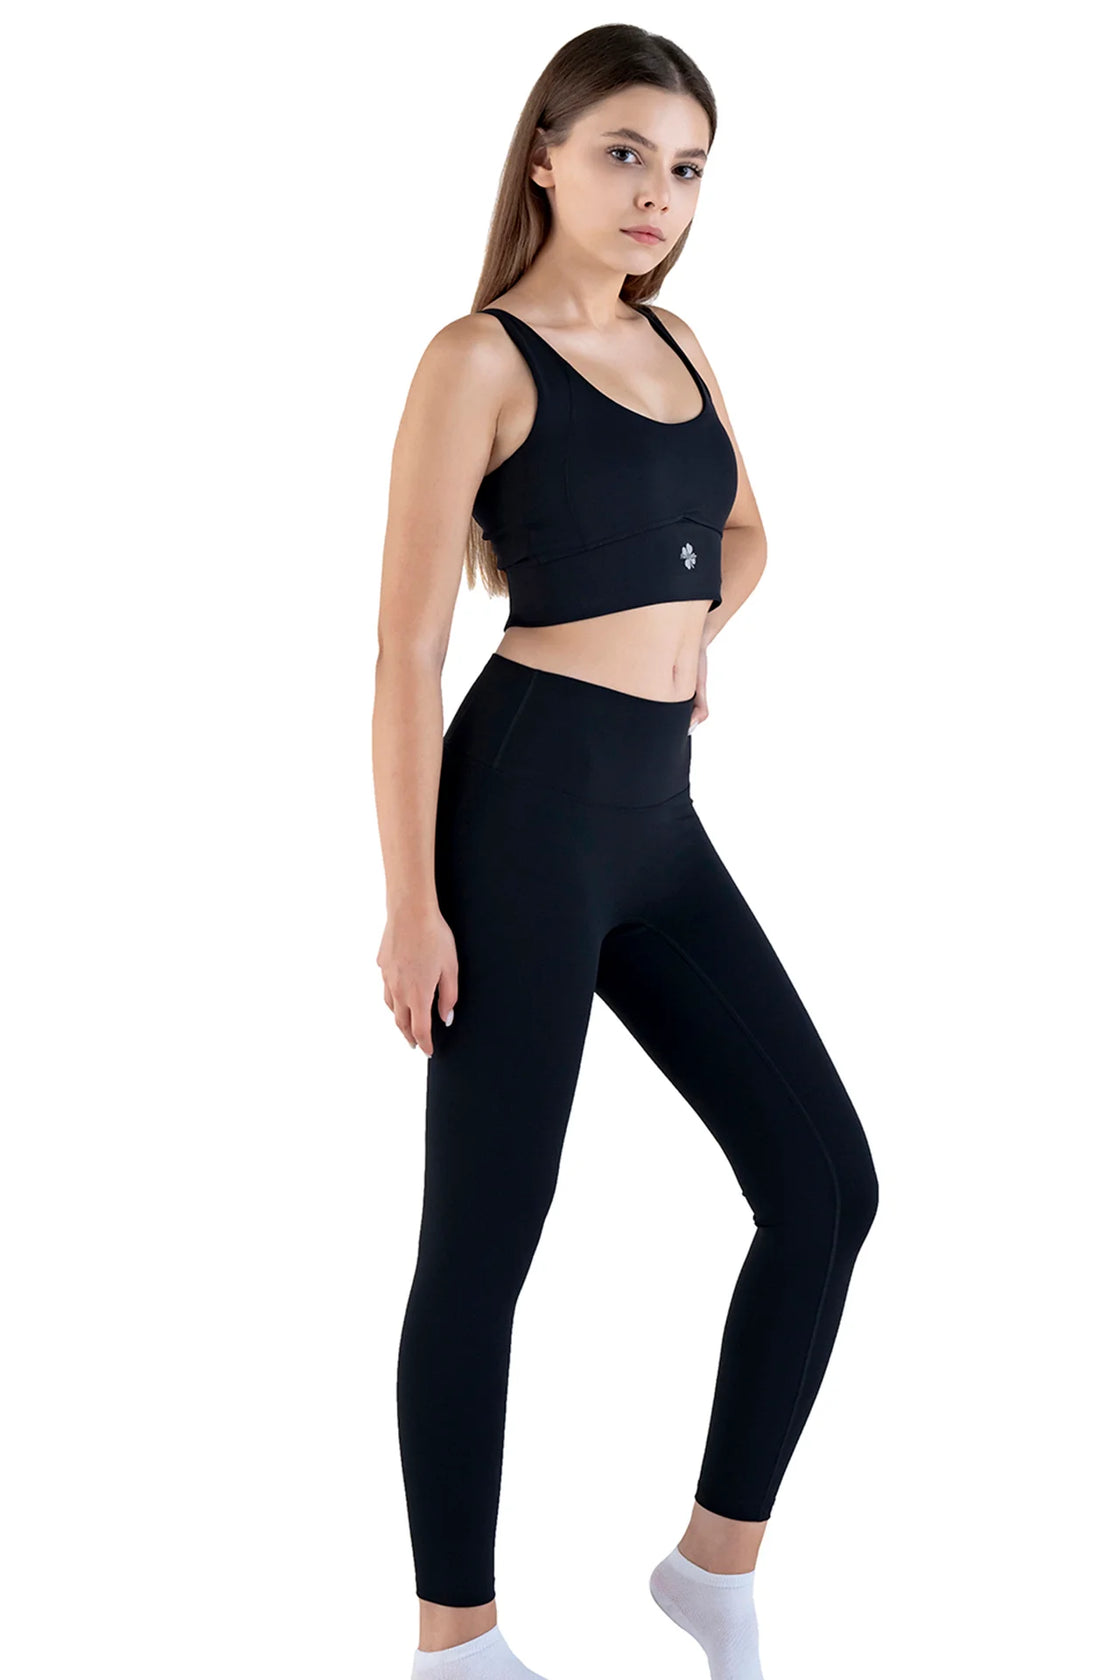 Black leggings set for women